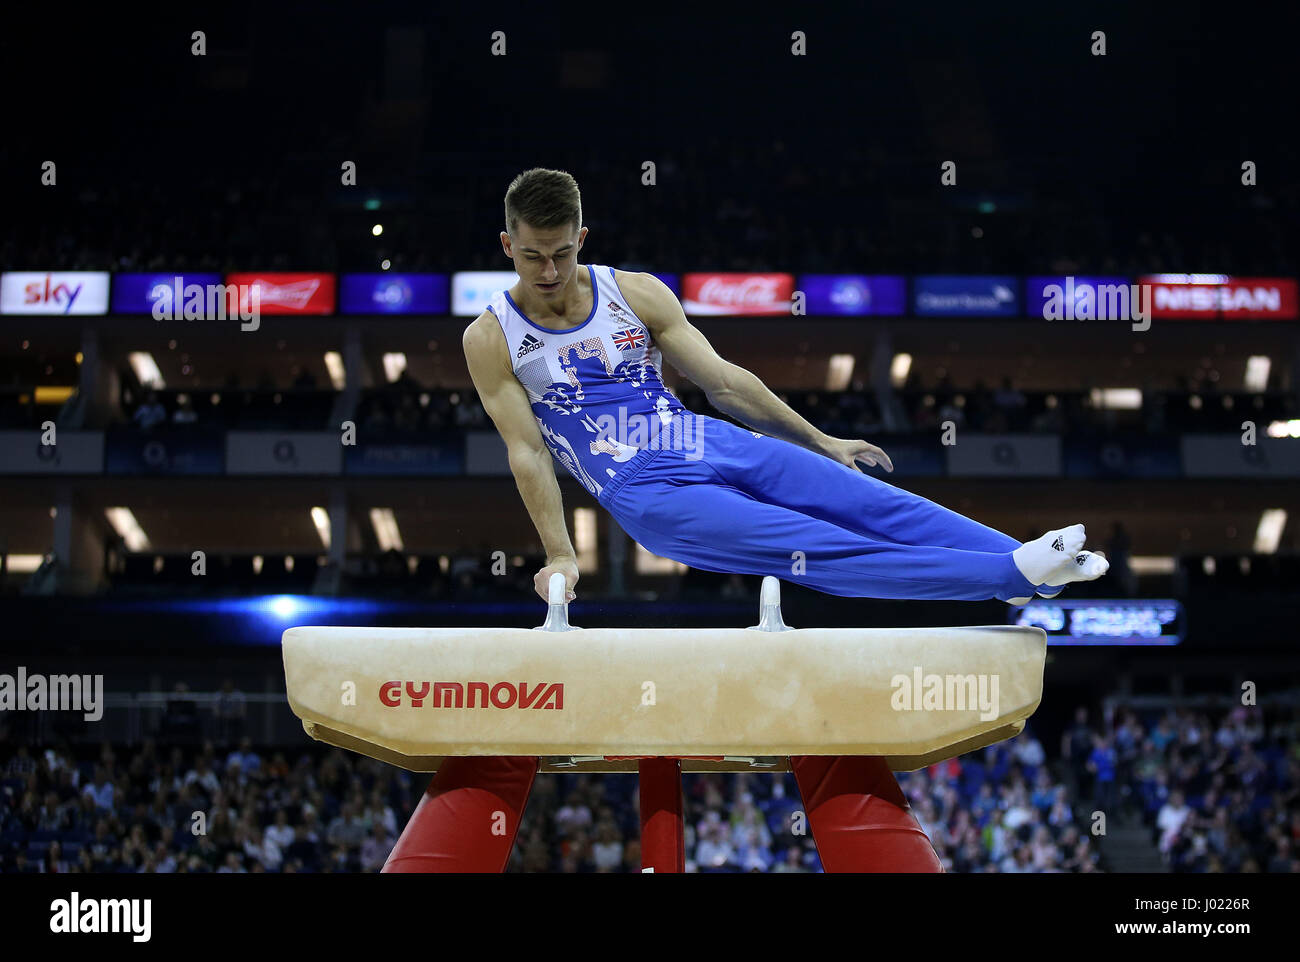 Der Brite Max Whitlock während Ausstellungsdisplay am Pauschenpferd während der World Cup Gymnastik in The O2, London. Stockfoto